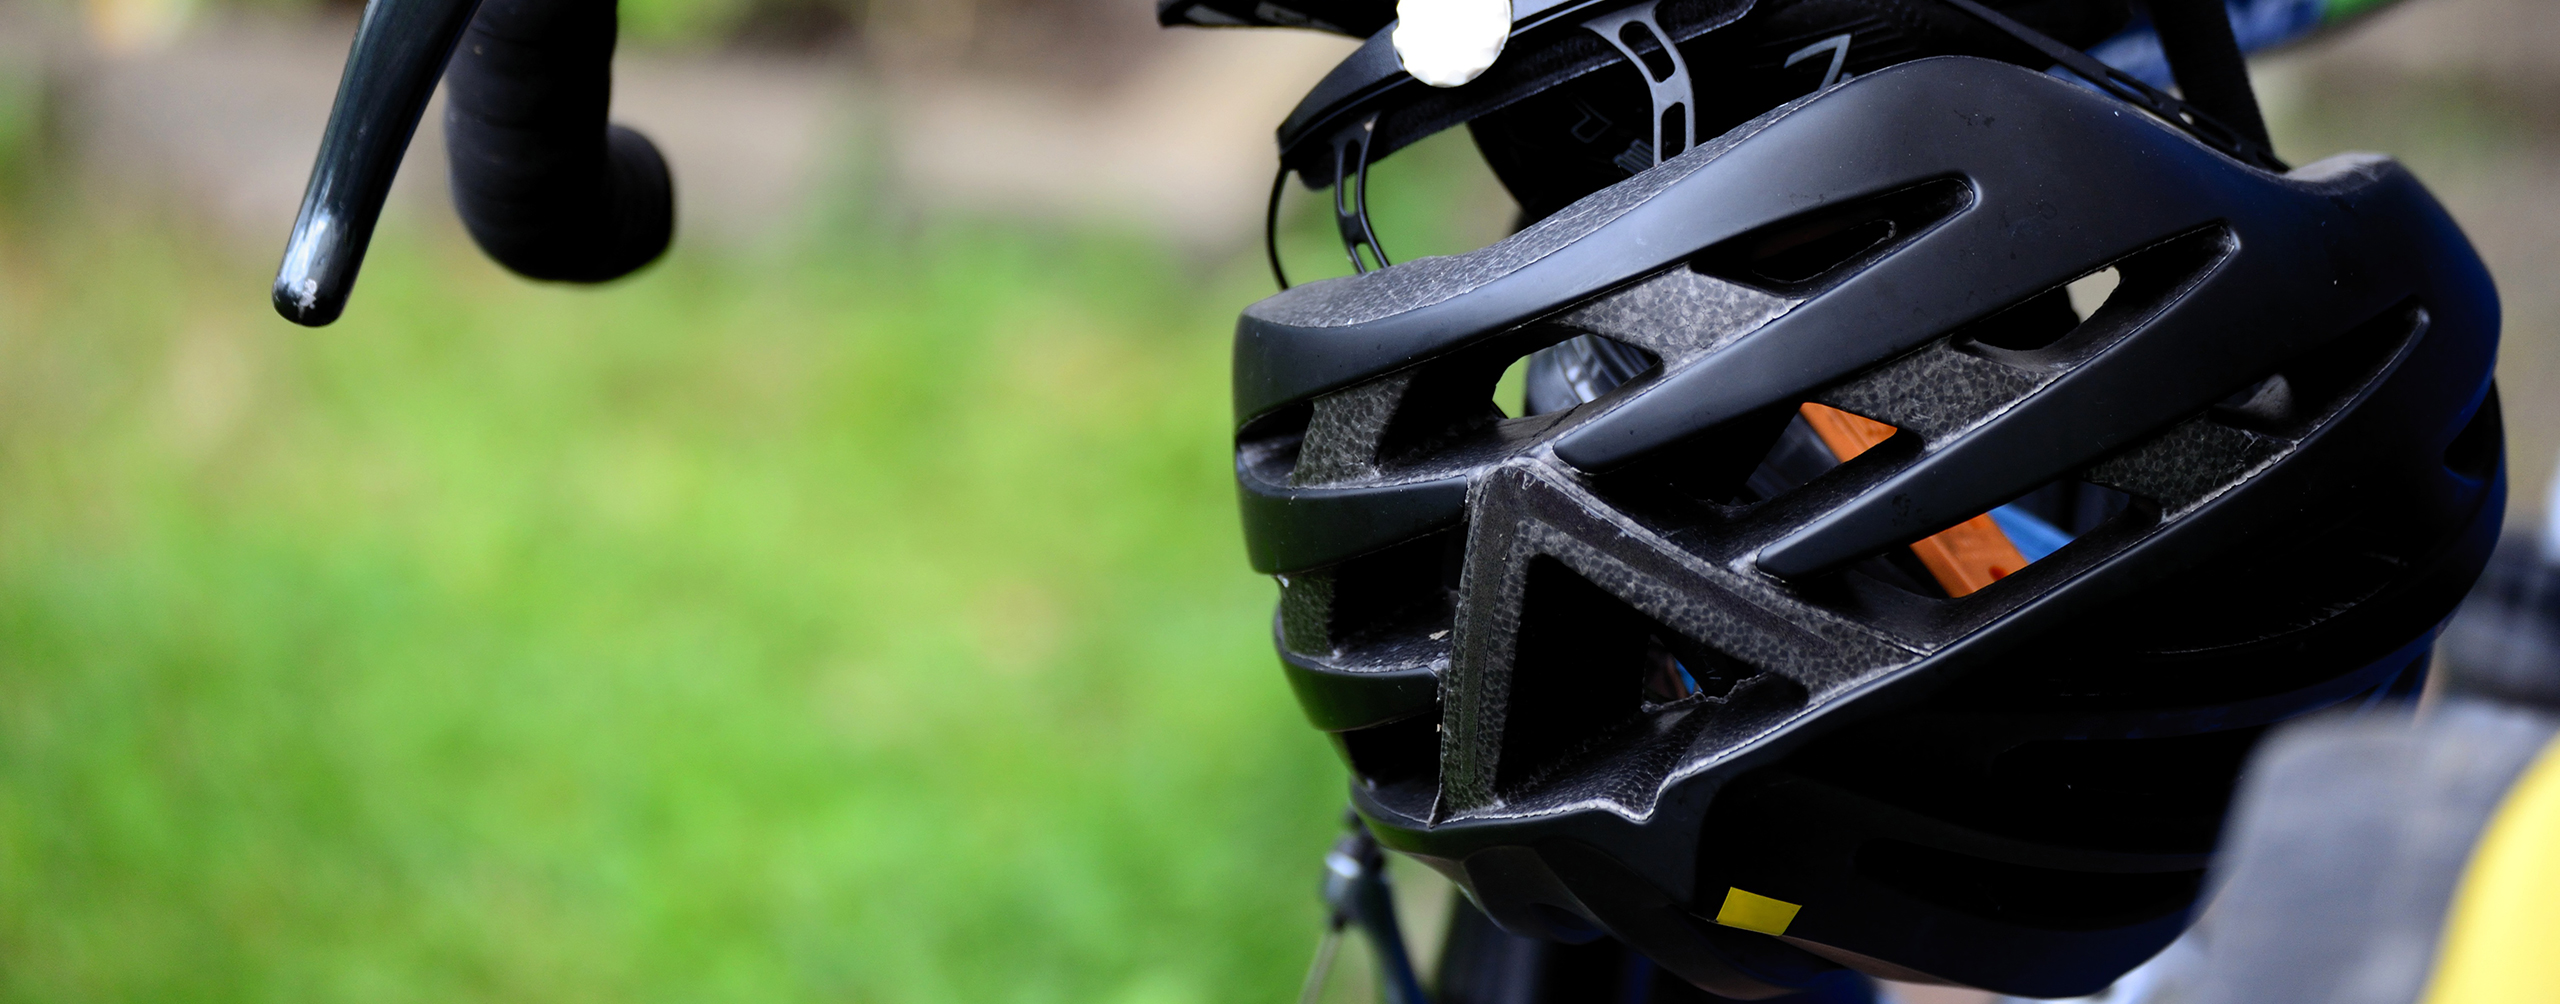 Как выбрать шлем для велосипеда